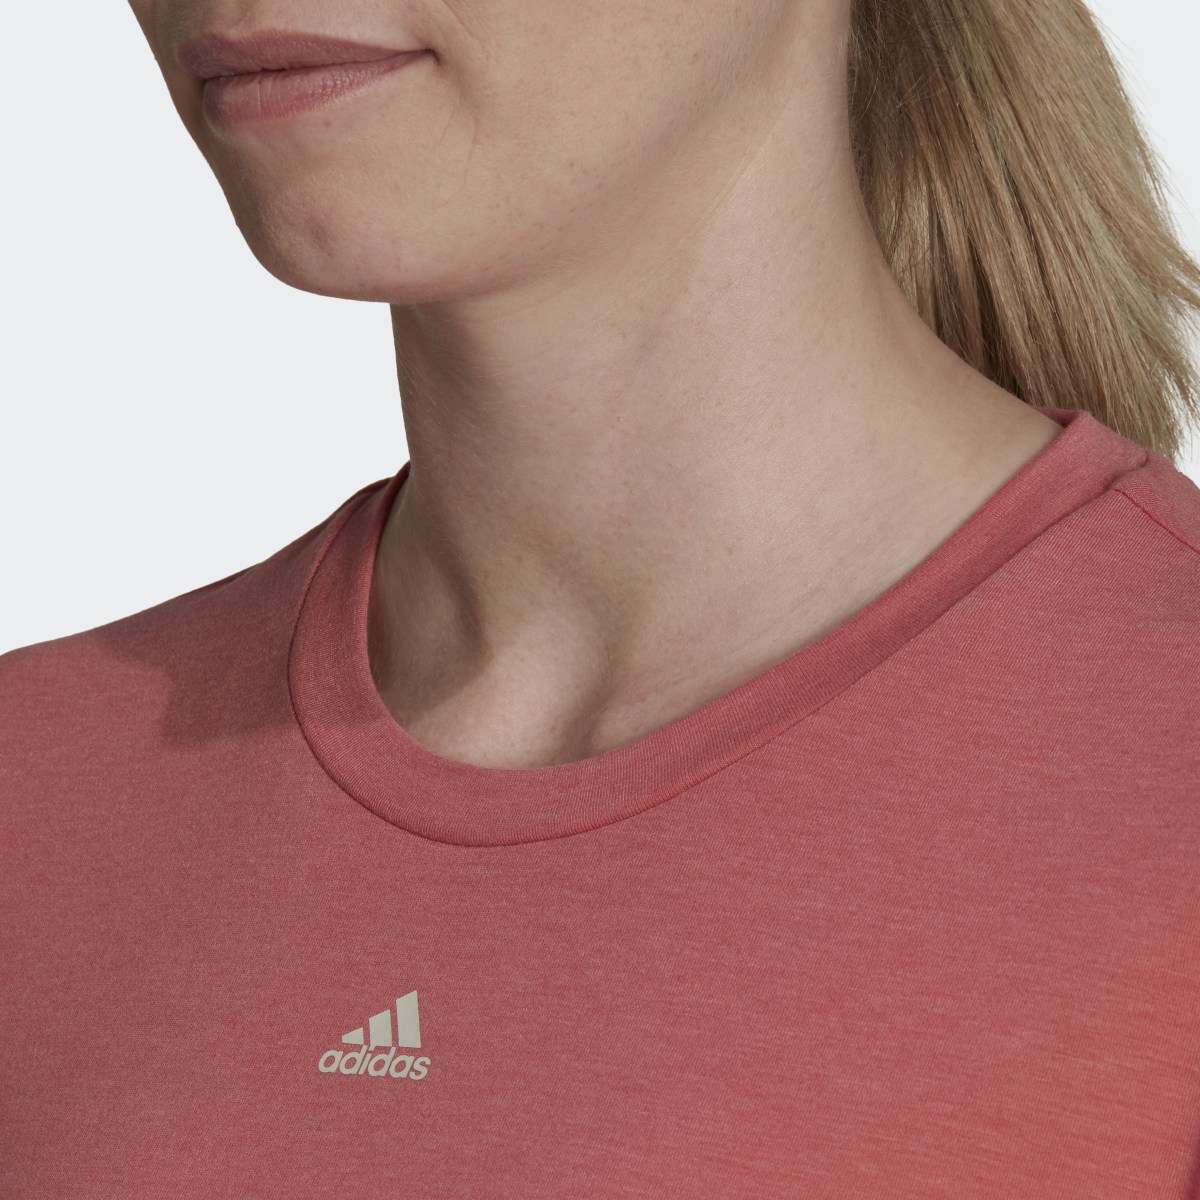 Adidas Train Icons 3-Stripes T-Shirt. 6